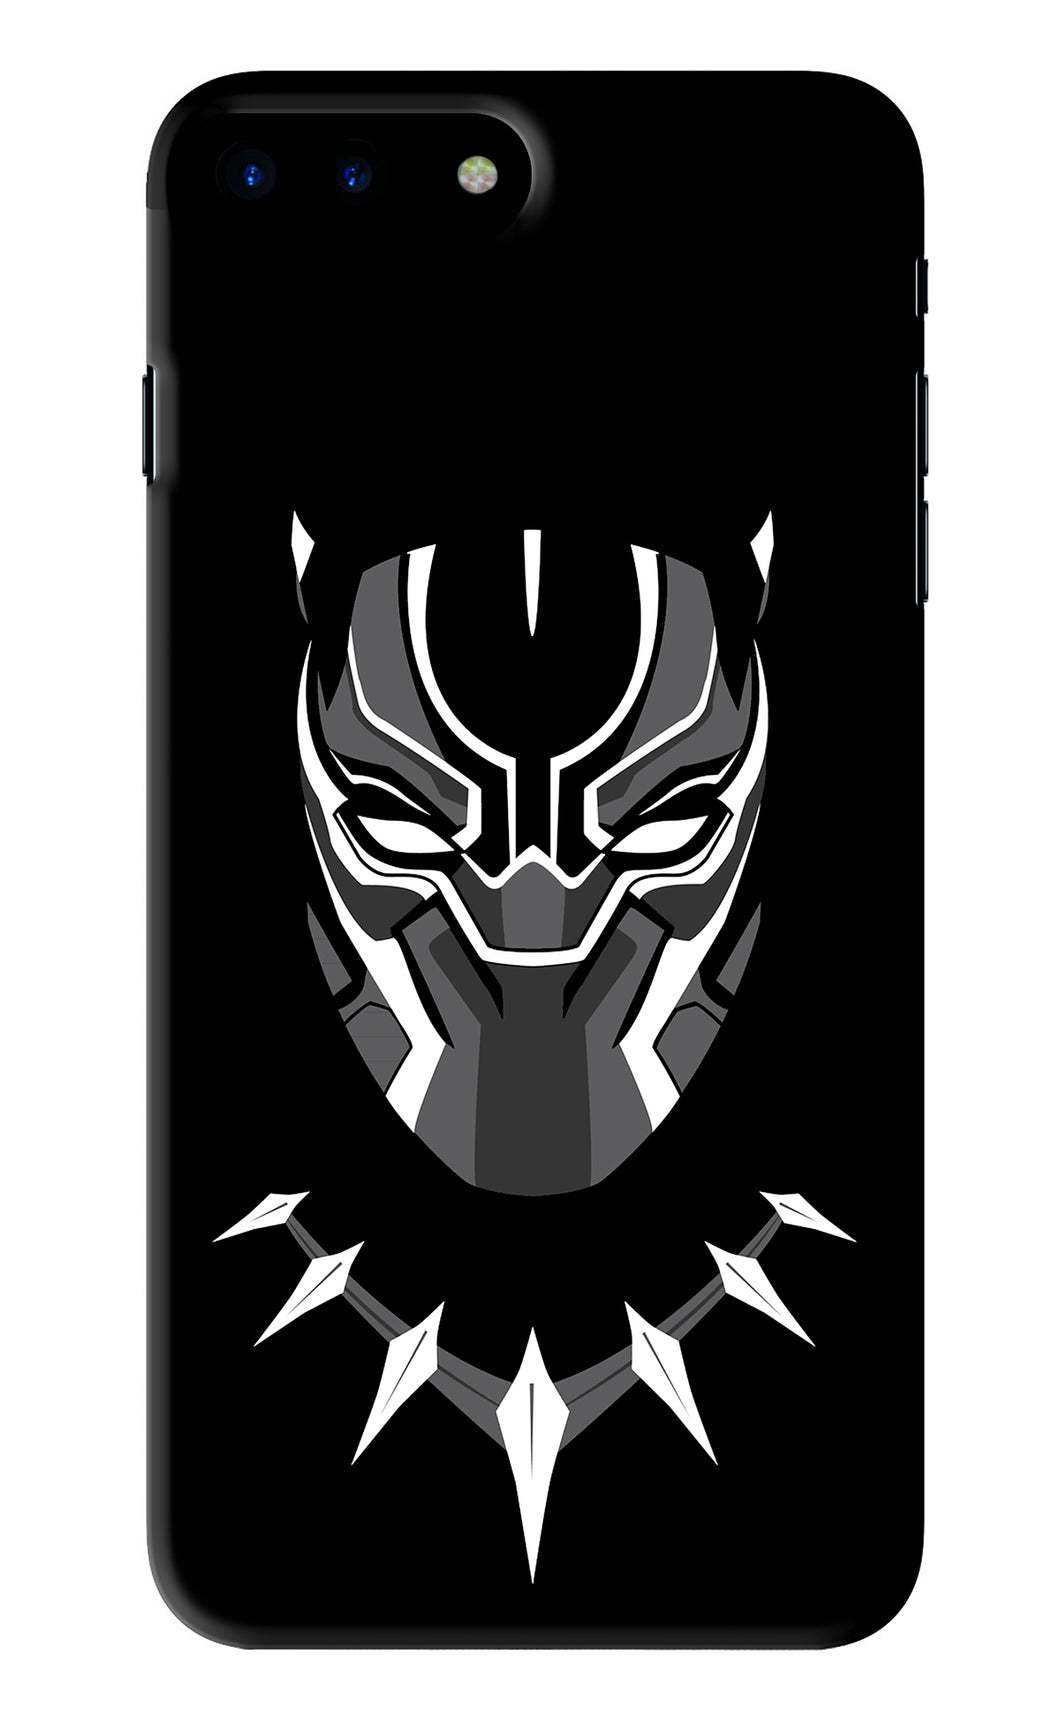 Black Panther iPhone 7 Plus Back Skin Wrap